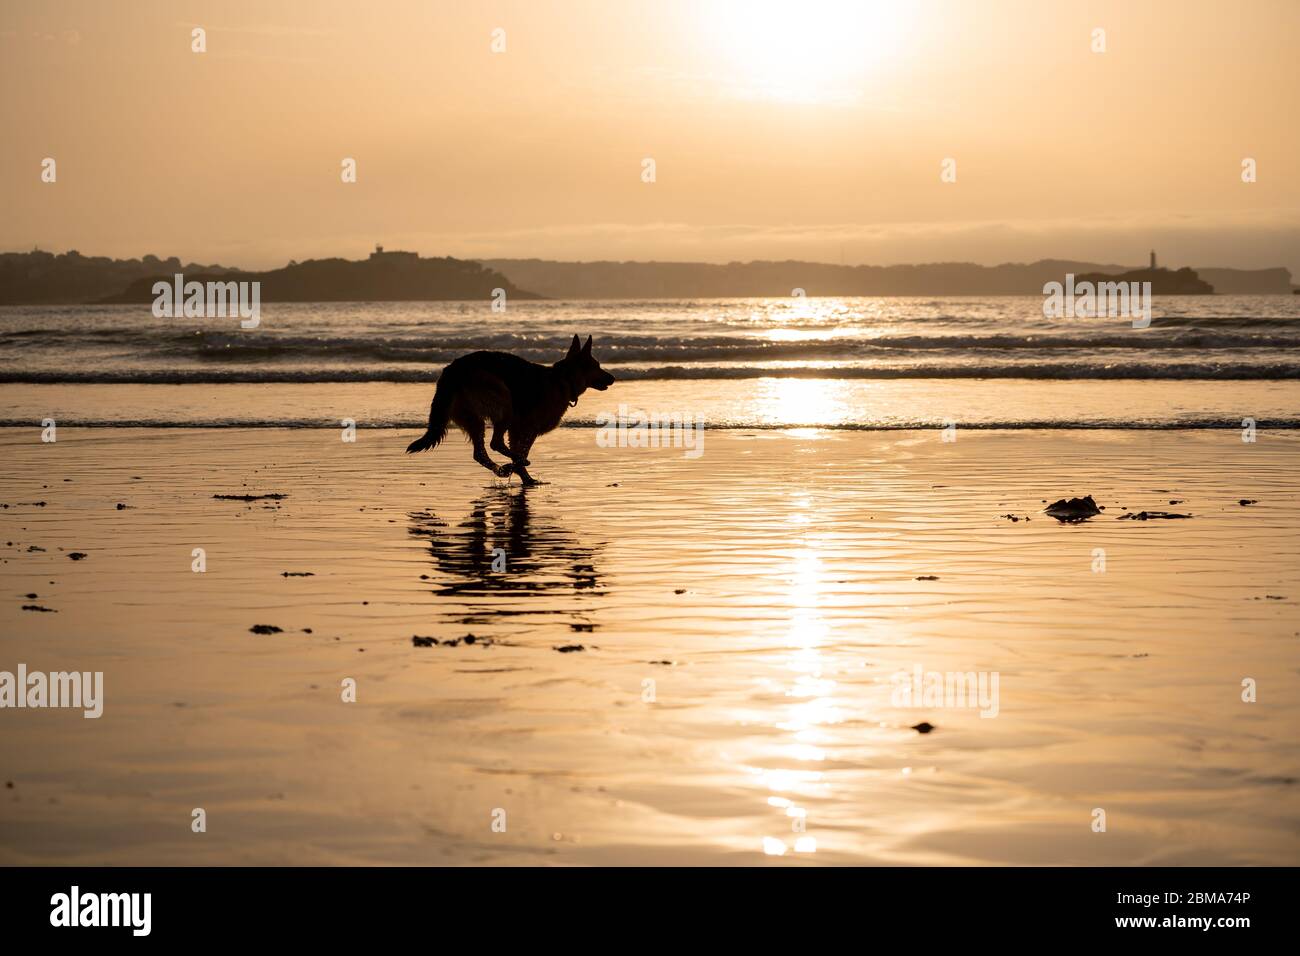 Berger allemand courant libre de la laisse et jouer sur une plage amicale de chiens au coucher du soleil. Animaux de compagnie bienvenus destination de vacances publicité et chien lo Banque D'Images